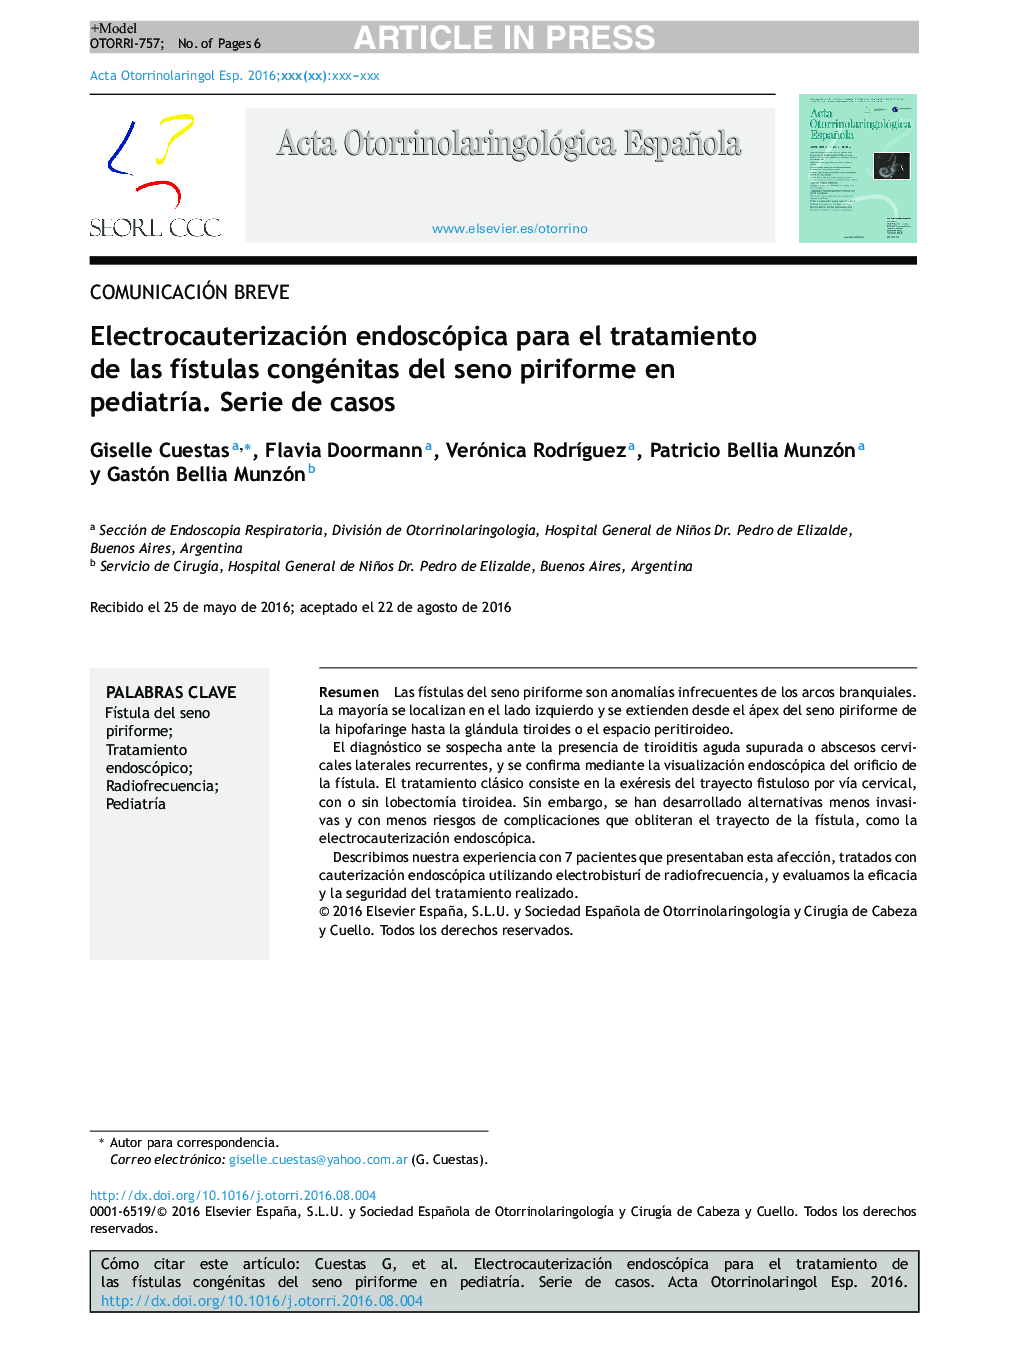 Electrocauterización endoscópica para el tratamiento de las fÃ­stulas congénitas del seno piriforme en pediatrÃ­a. Serie de casos